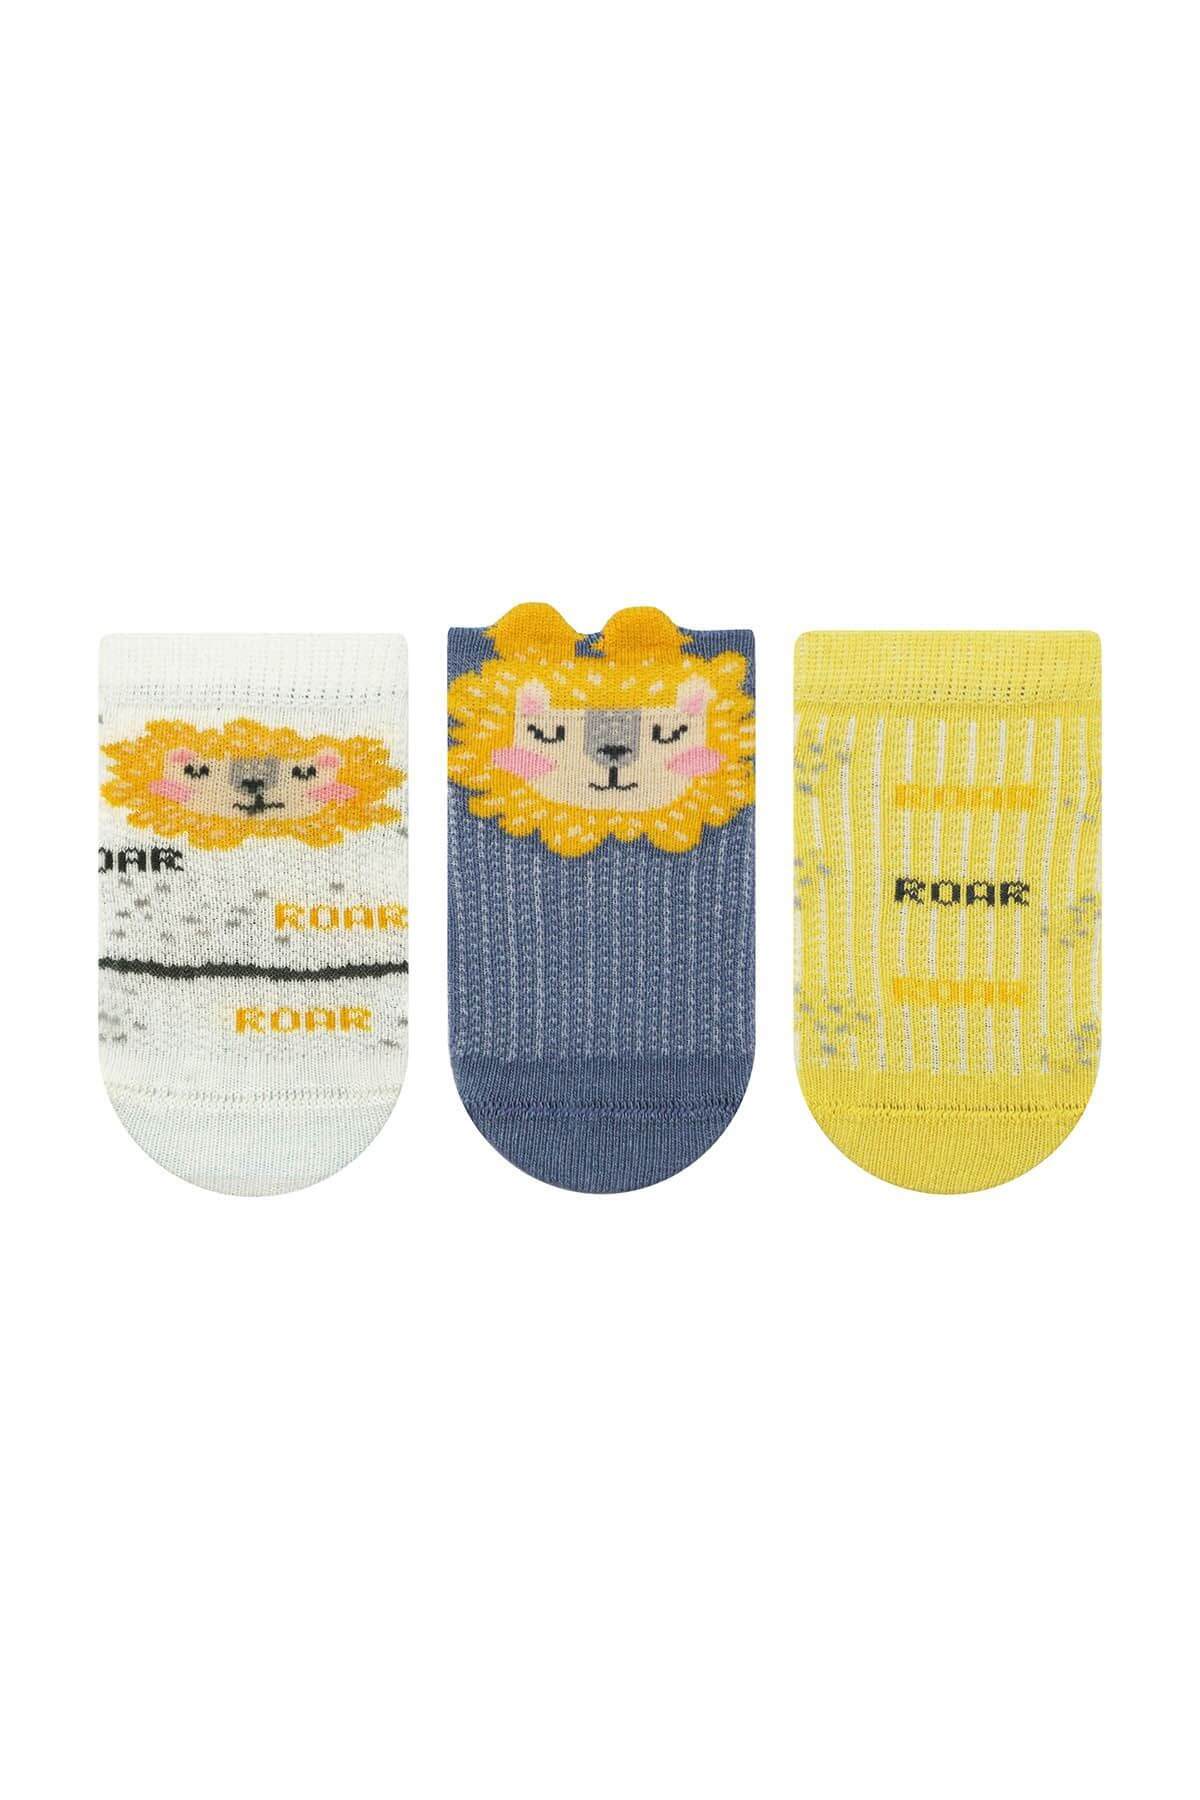 Baby 3D Dinosaur-Lion Boy Sock Pack For 12-18 Month Old - Sockmate